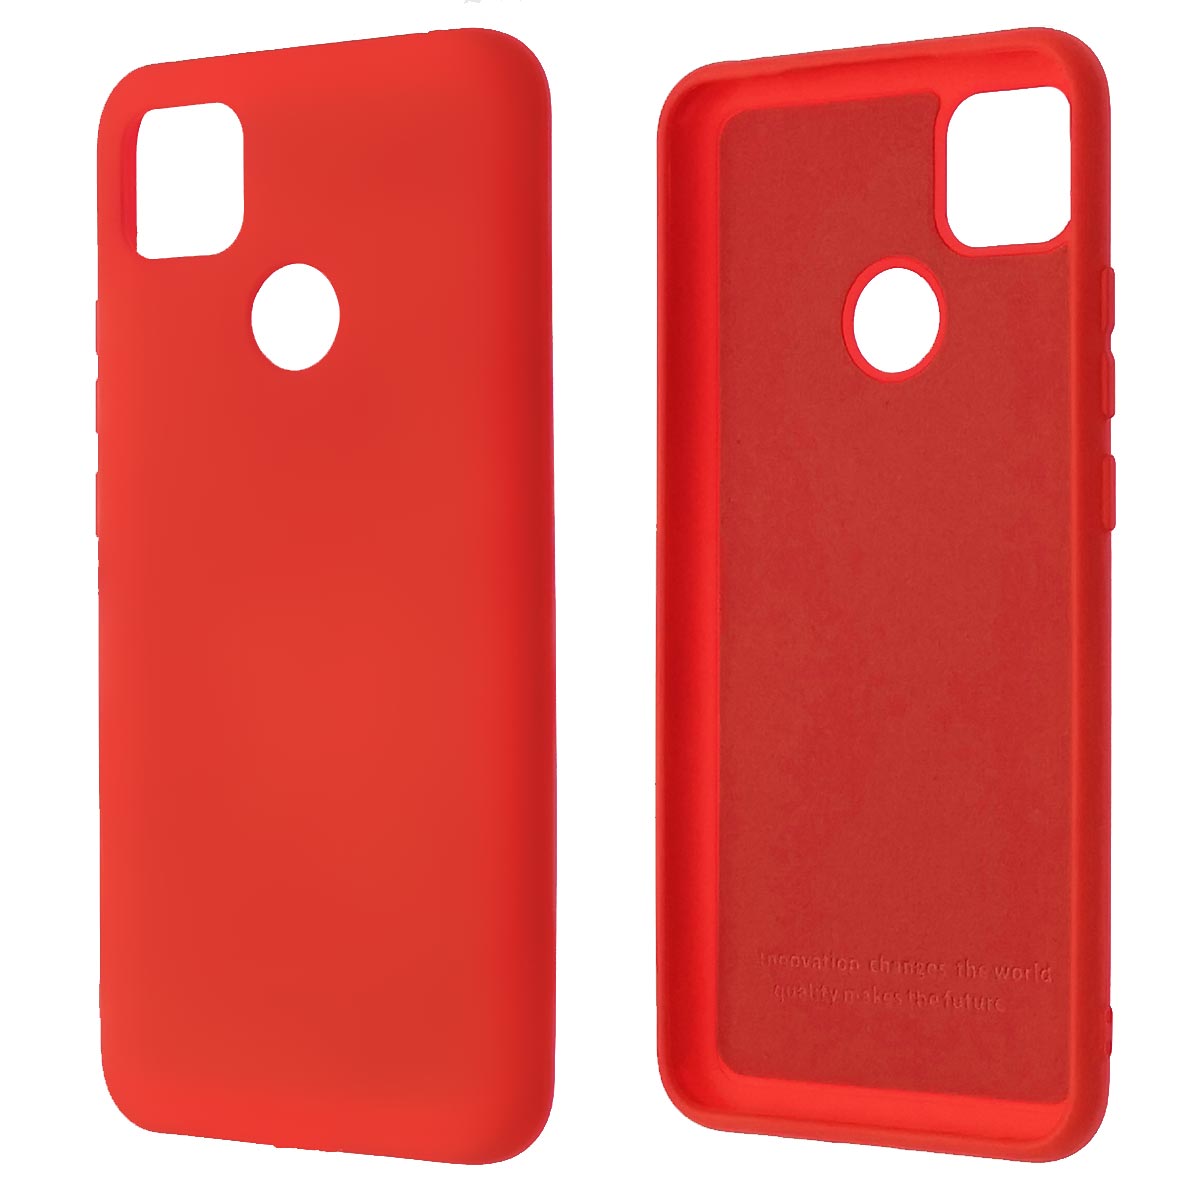 Чехол накладка Silicon Cover для XIAOMI Redmi 9C, Redmi 10A, силикон, бархат, цвет красный